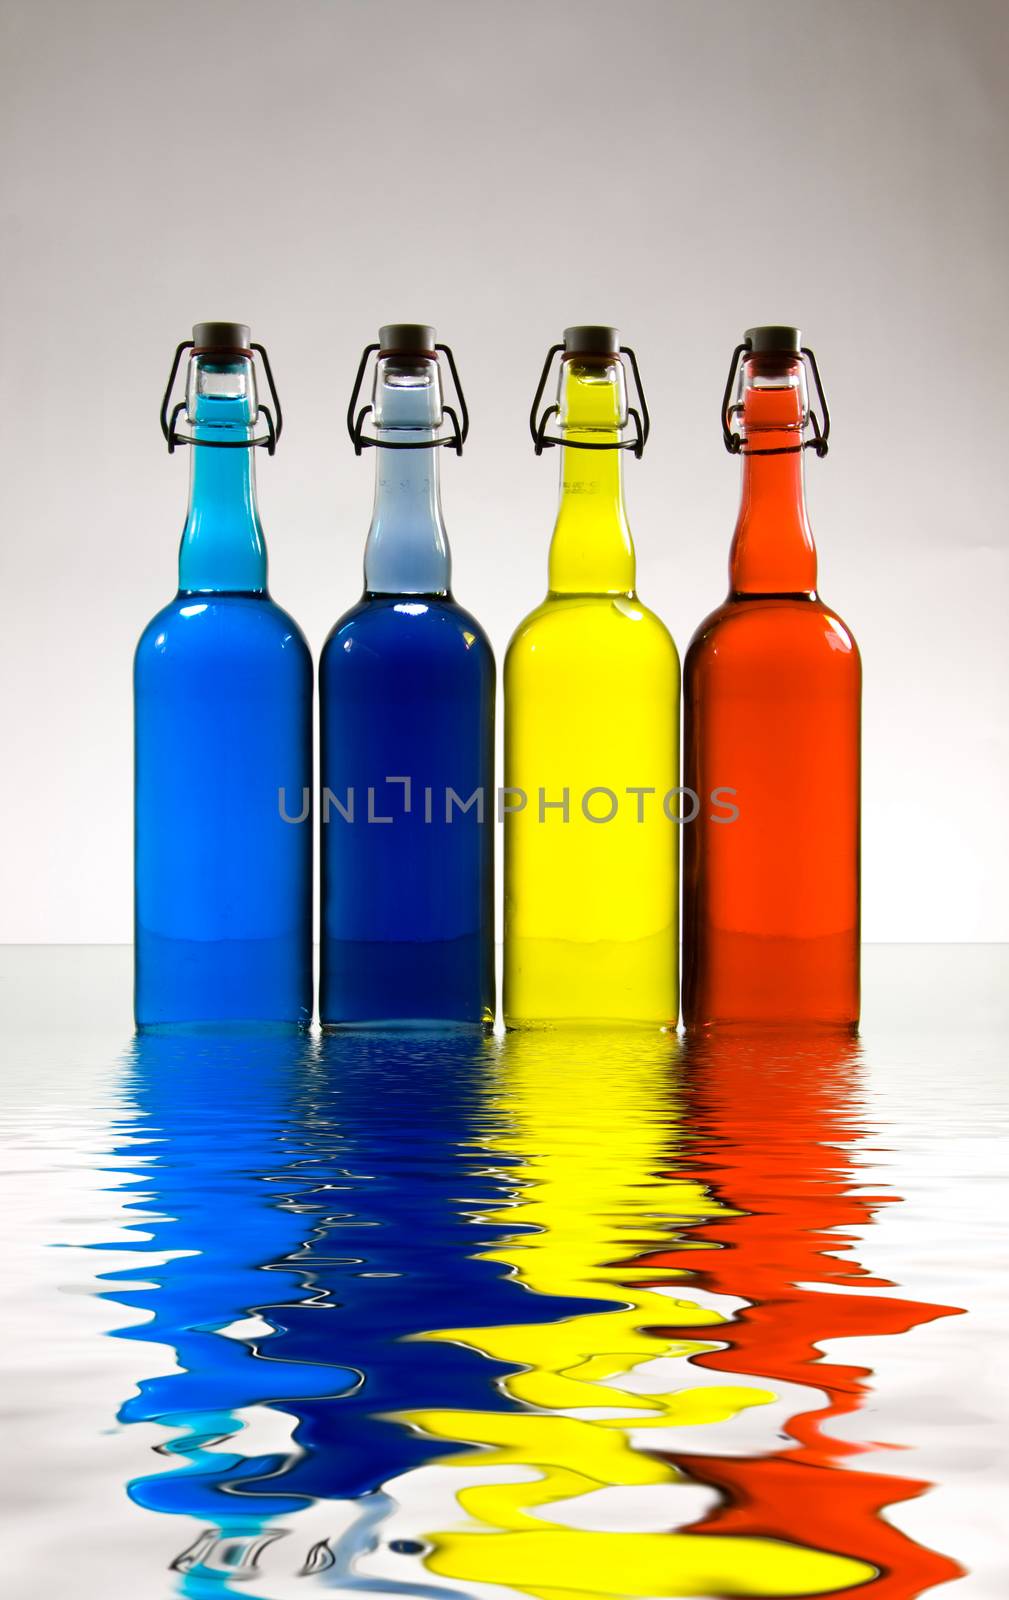 Colorful bottles. Modern art by applesstock